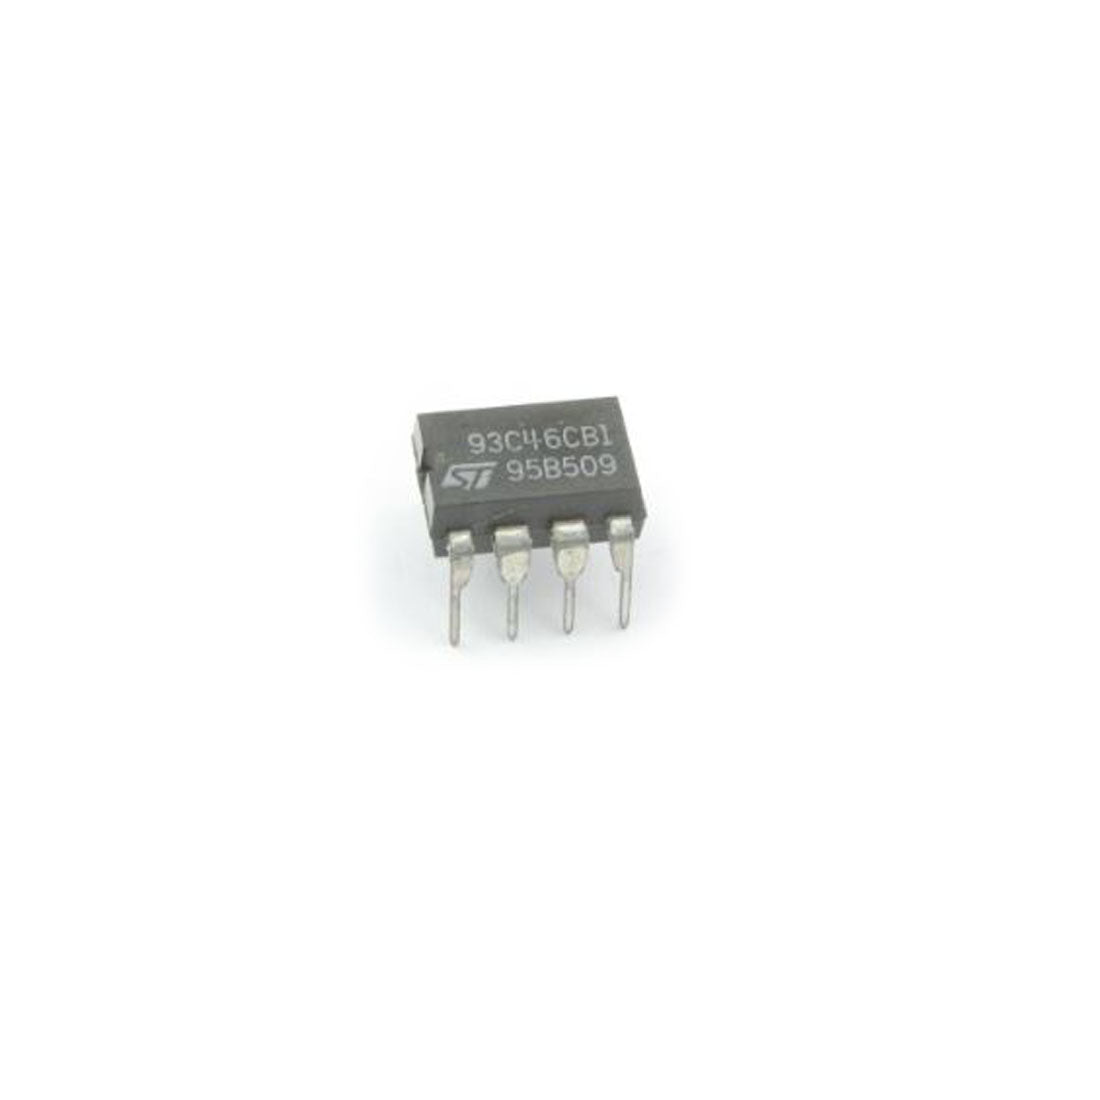 93C46CB1 componente elettronico, circuito integrato, transistor, 8 contatti